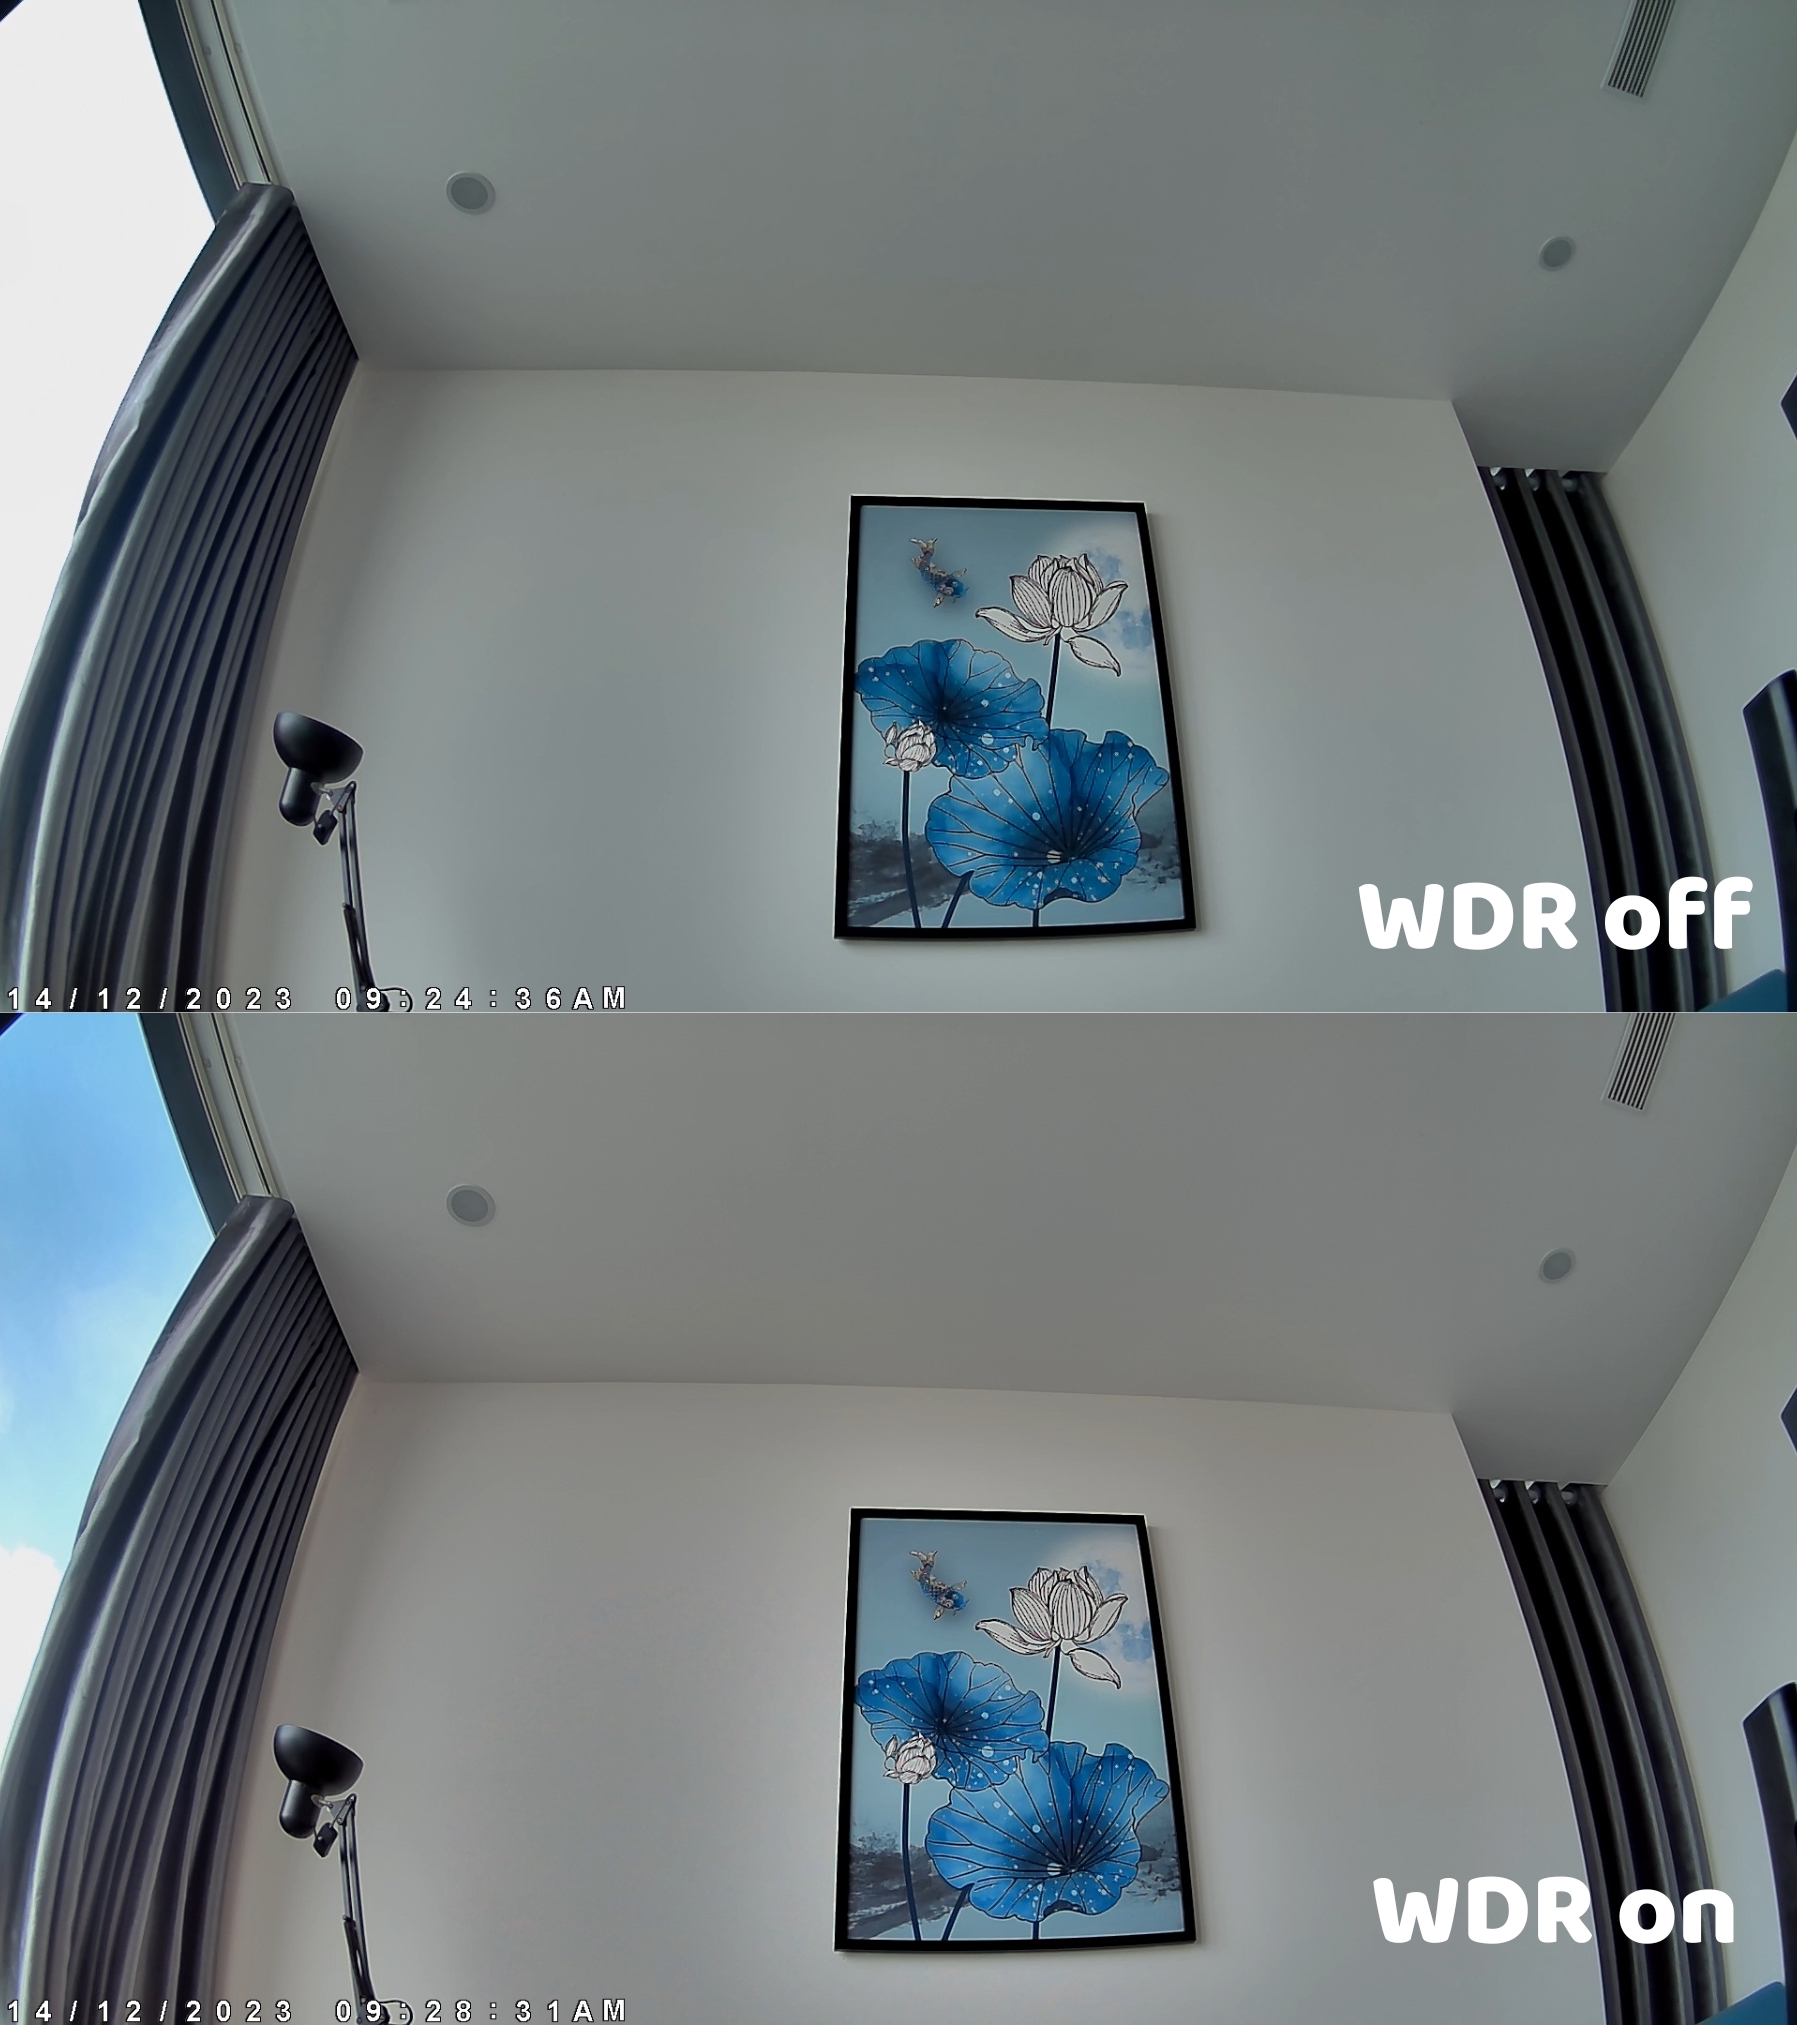 WDR on vs off.jpg